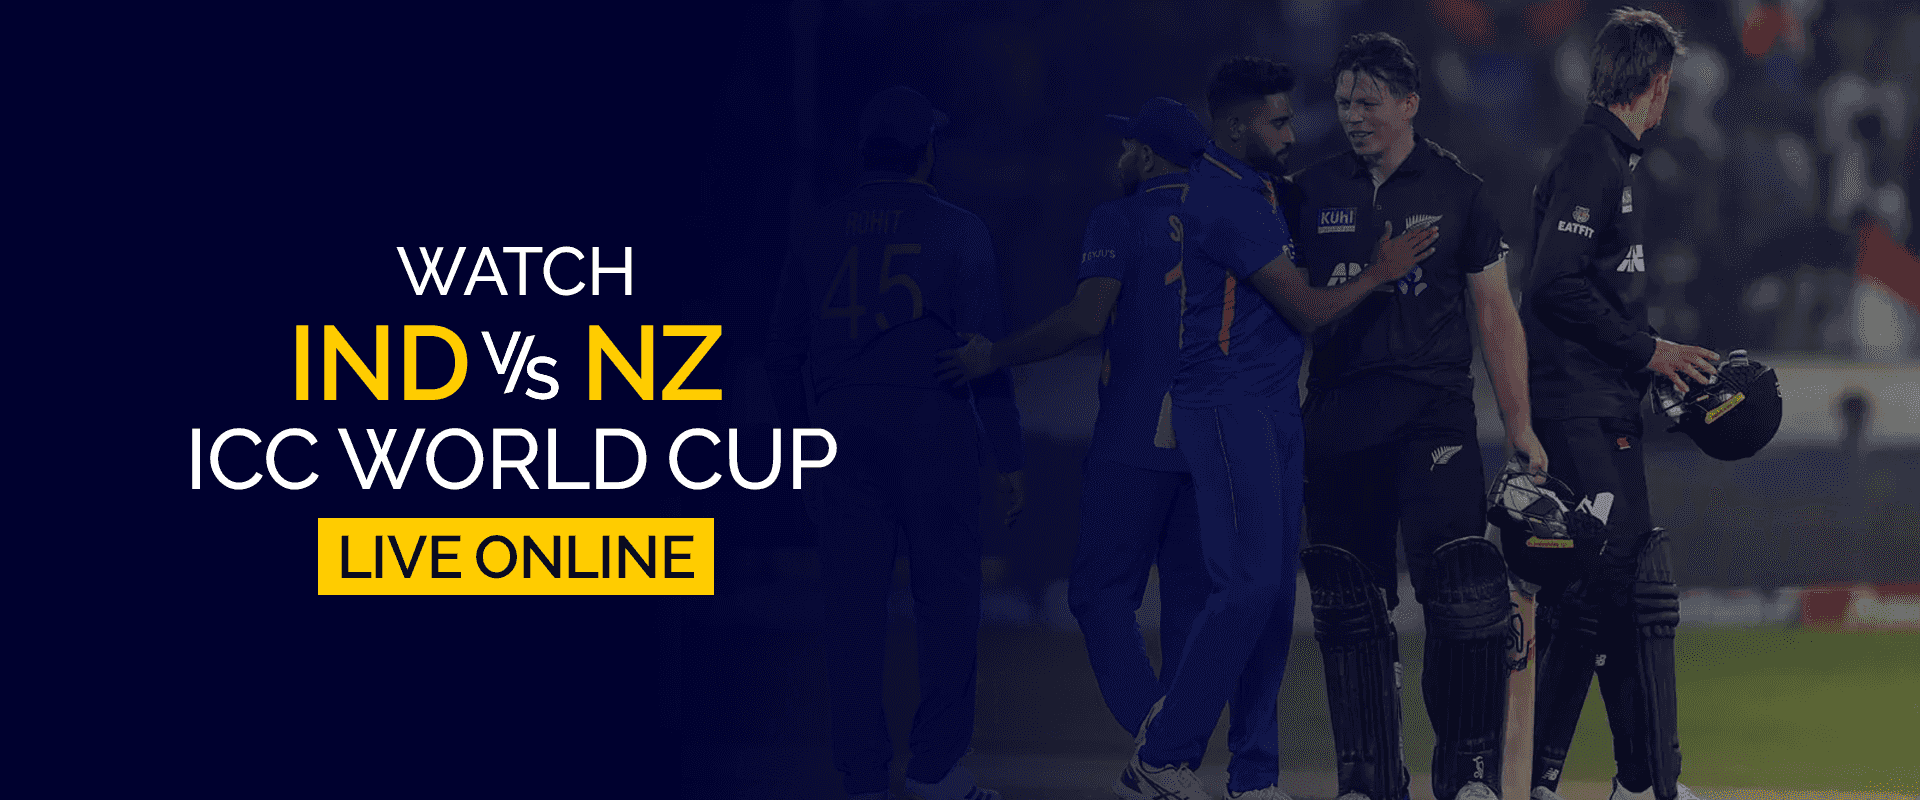 Regardez l'Inde contre la Nouvelle-Zélande Coupe du monde ICC en direct en ligne